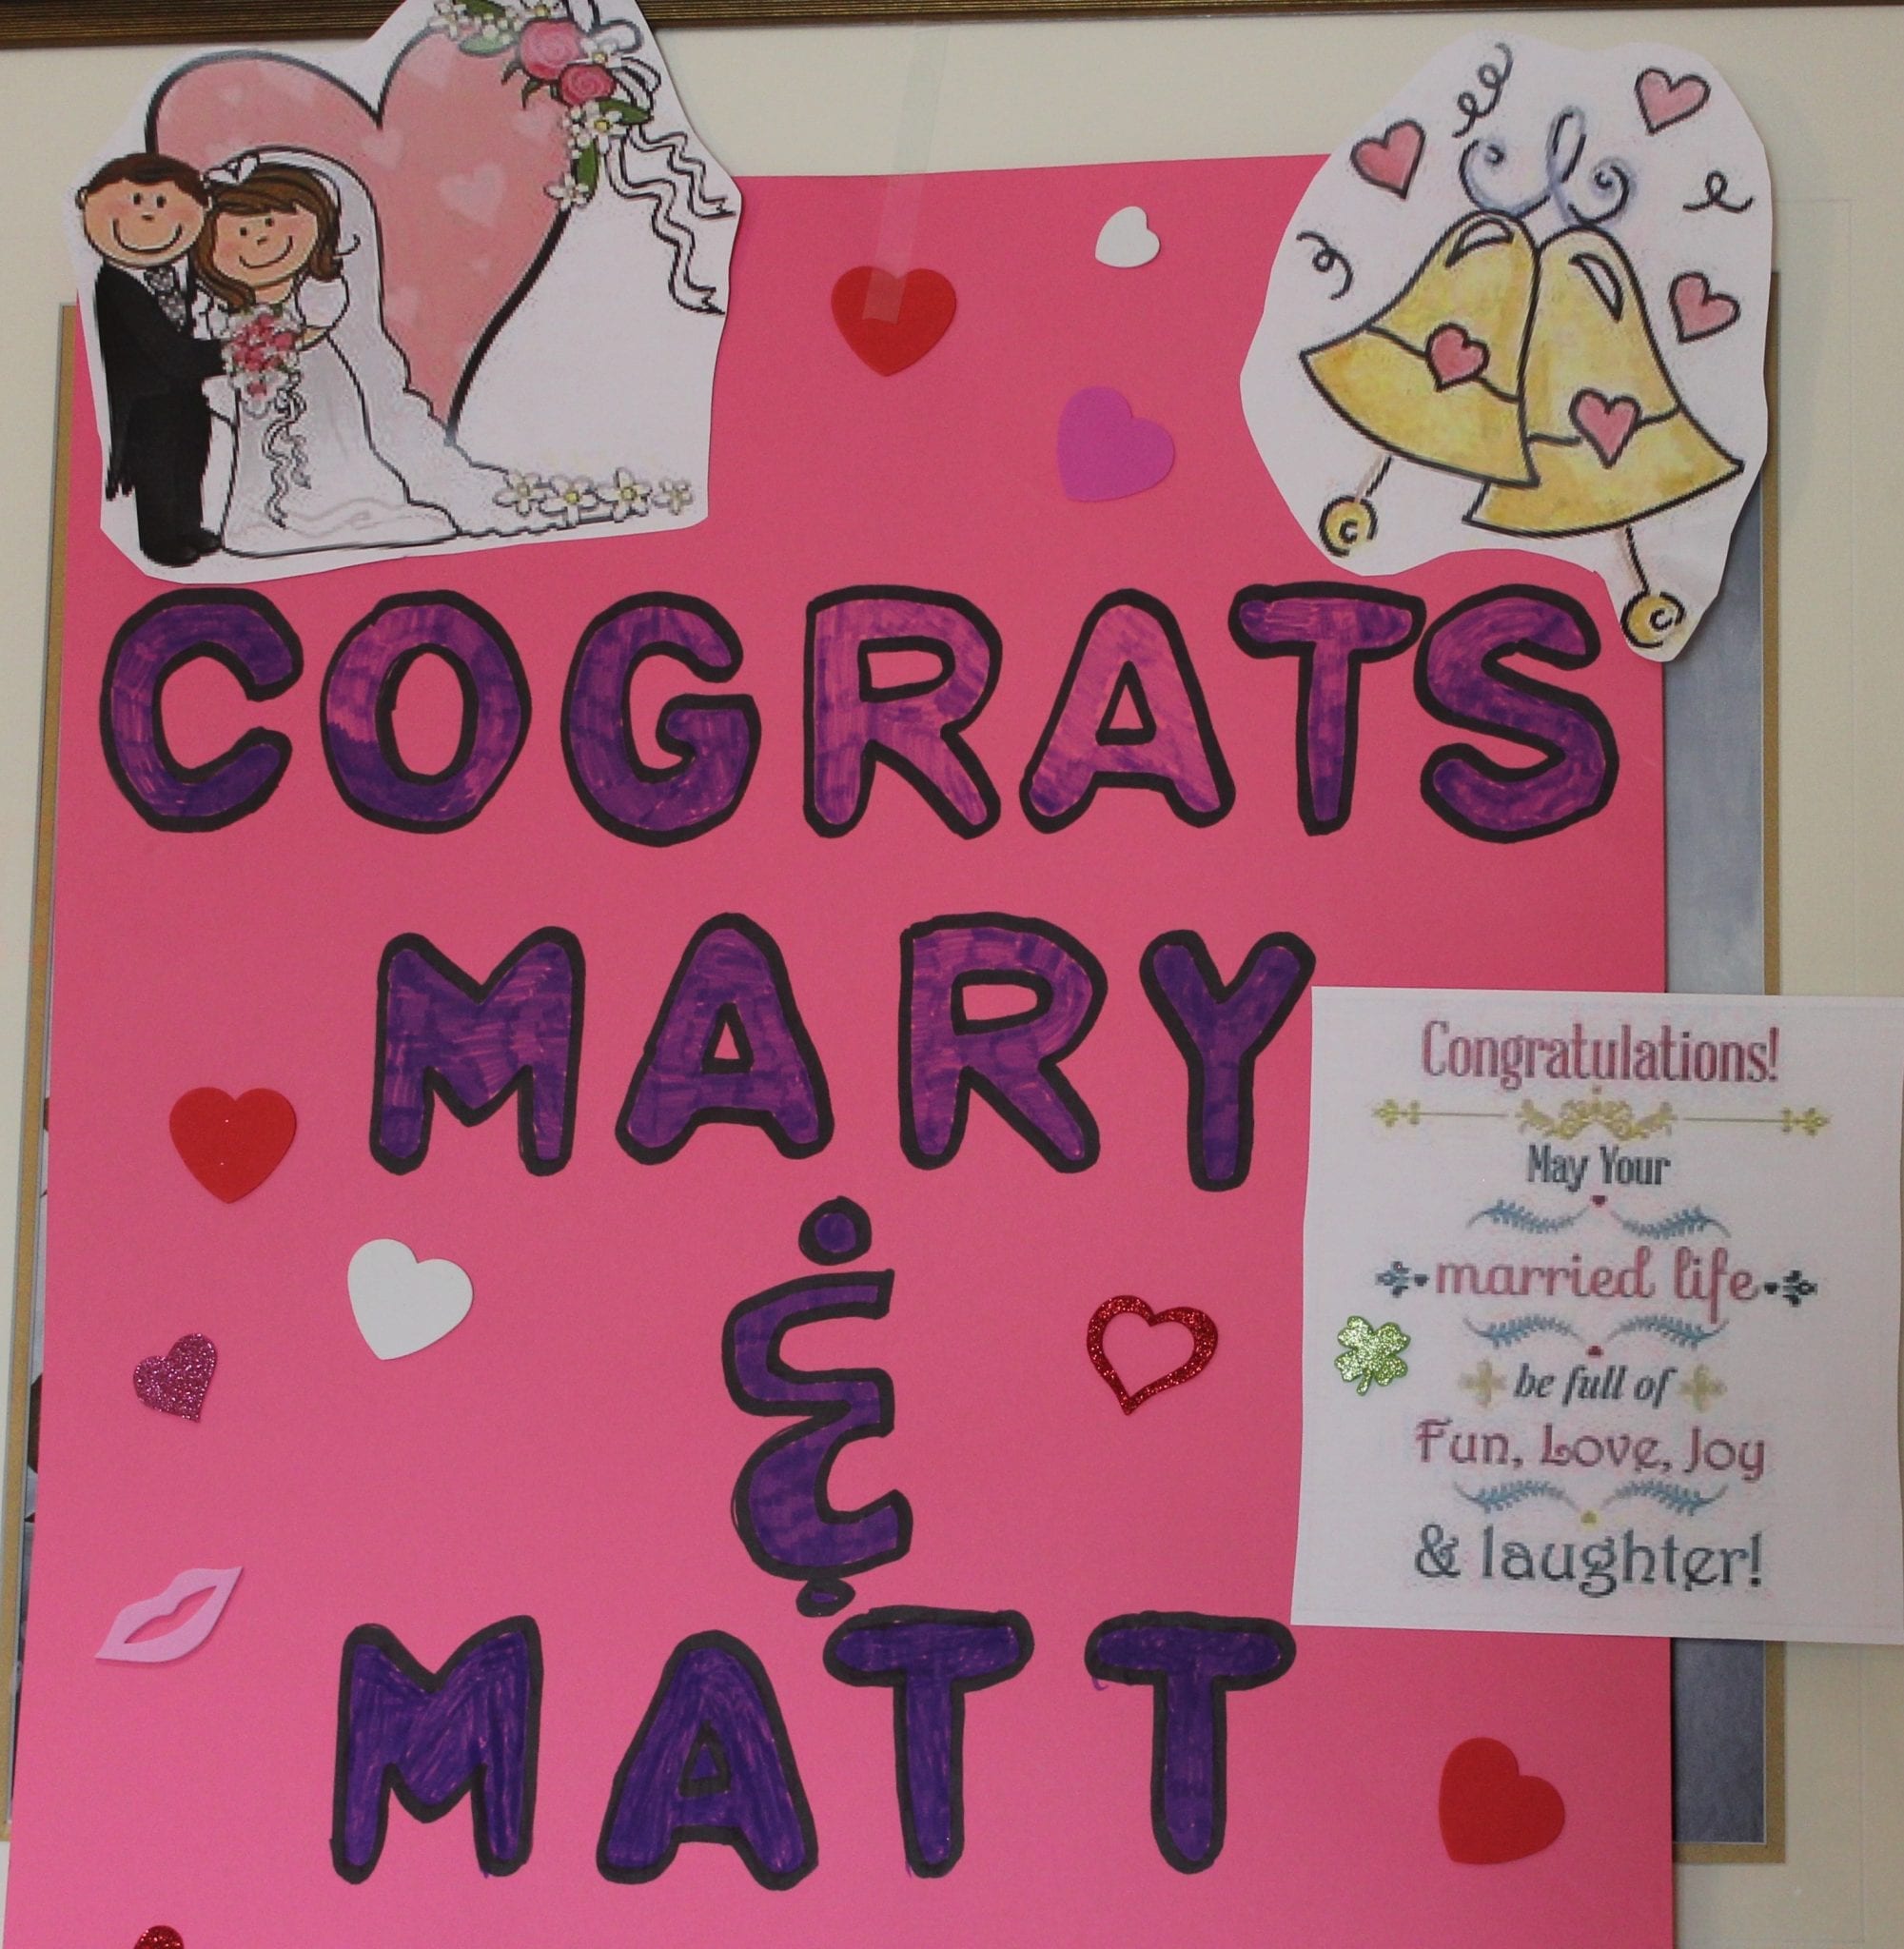 Cograts Mary & Matt